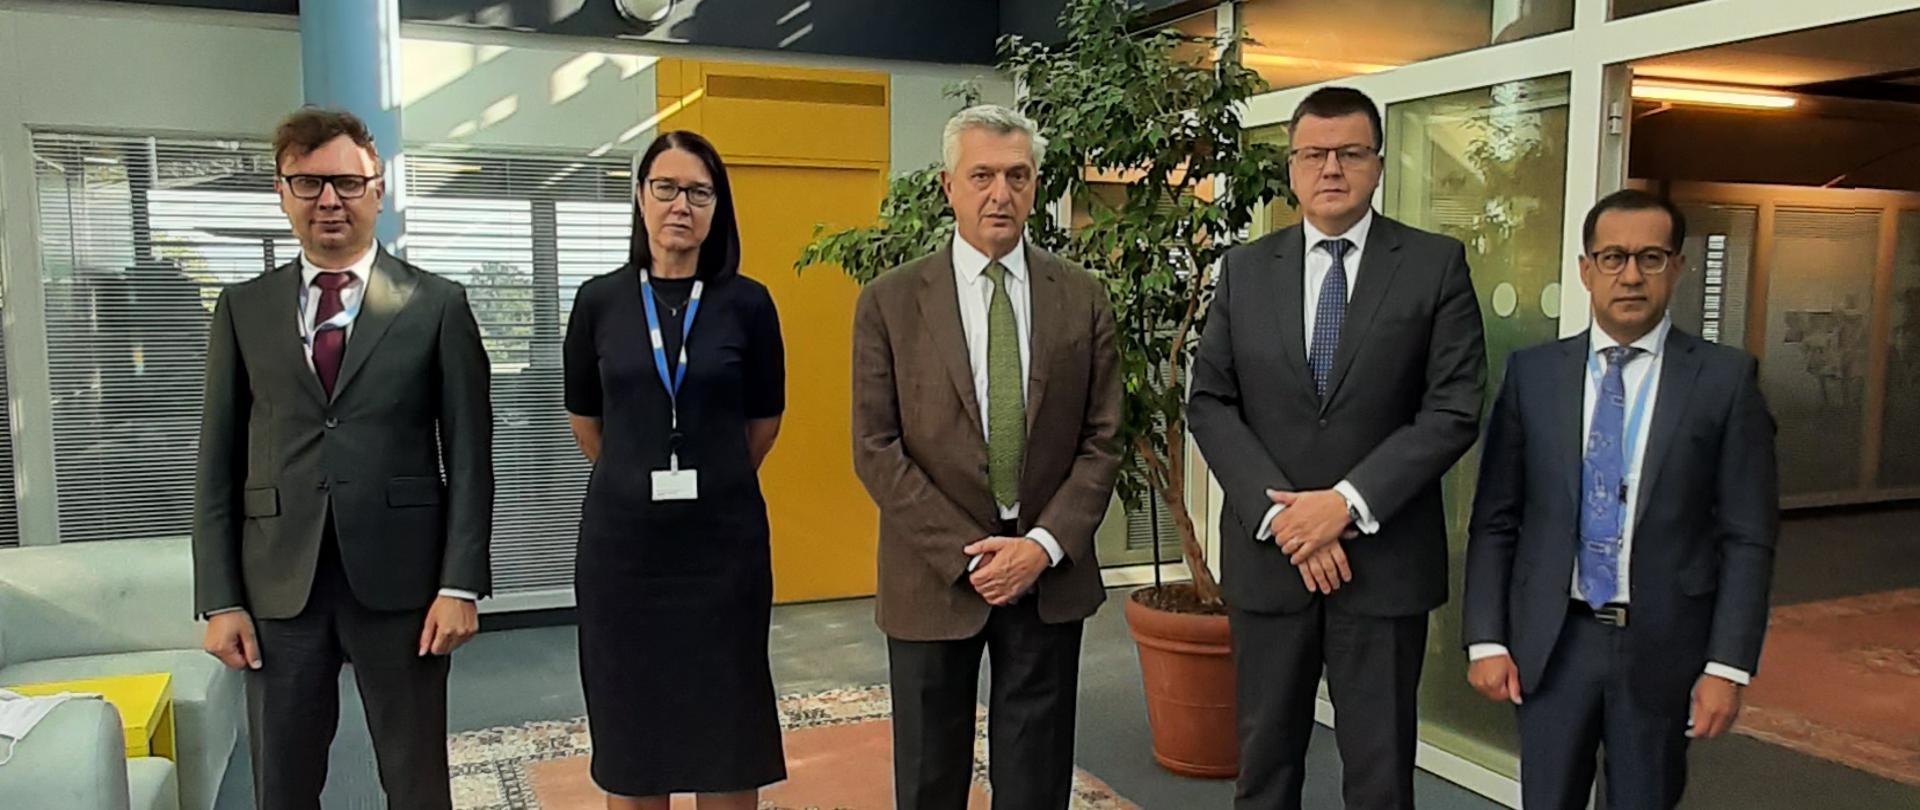 Spotkanie UNHCR z Ambasadorami Polski, Litwy Łotwy i Estonii w Genewie